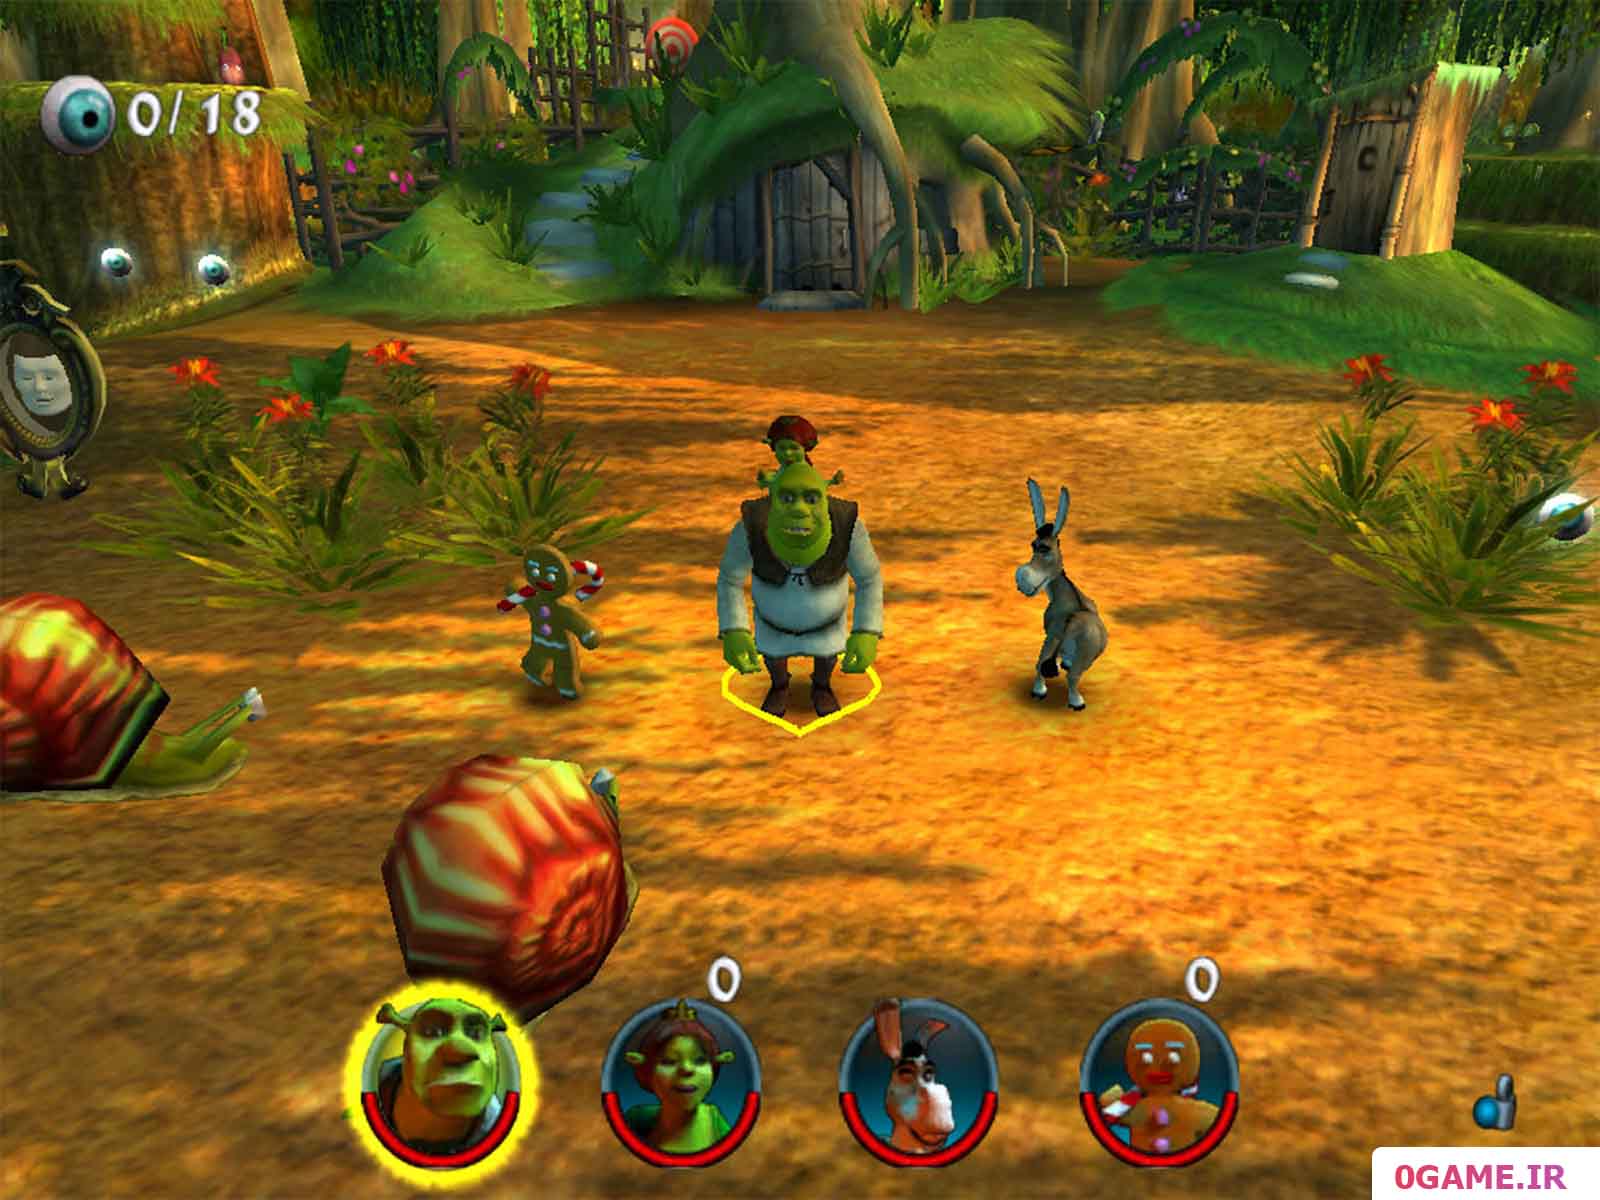  دانلود بازی (Shrek 2: Team Action) نسخه کامل